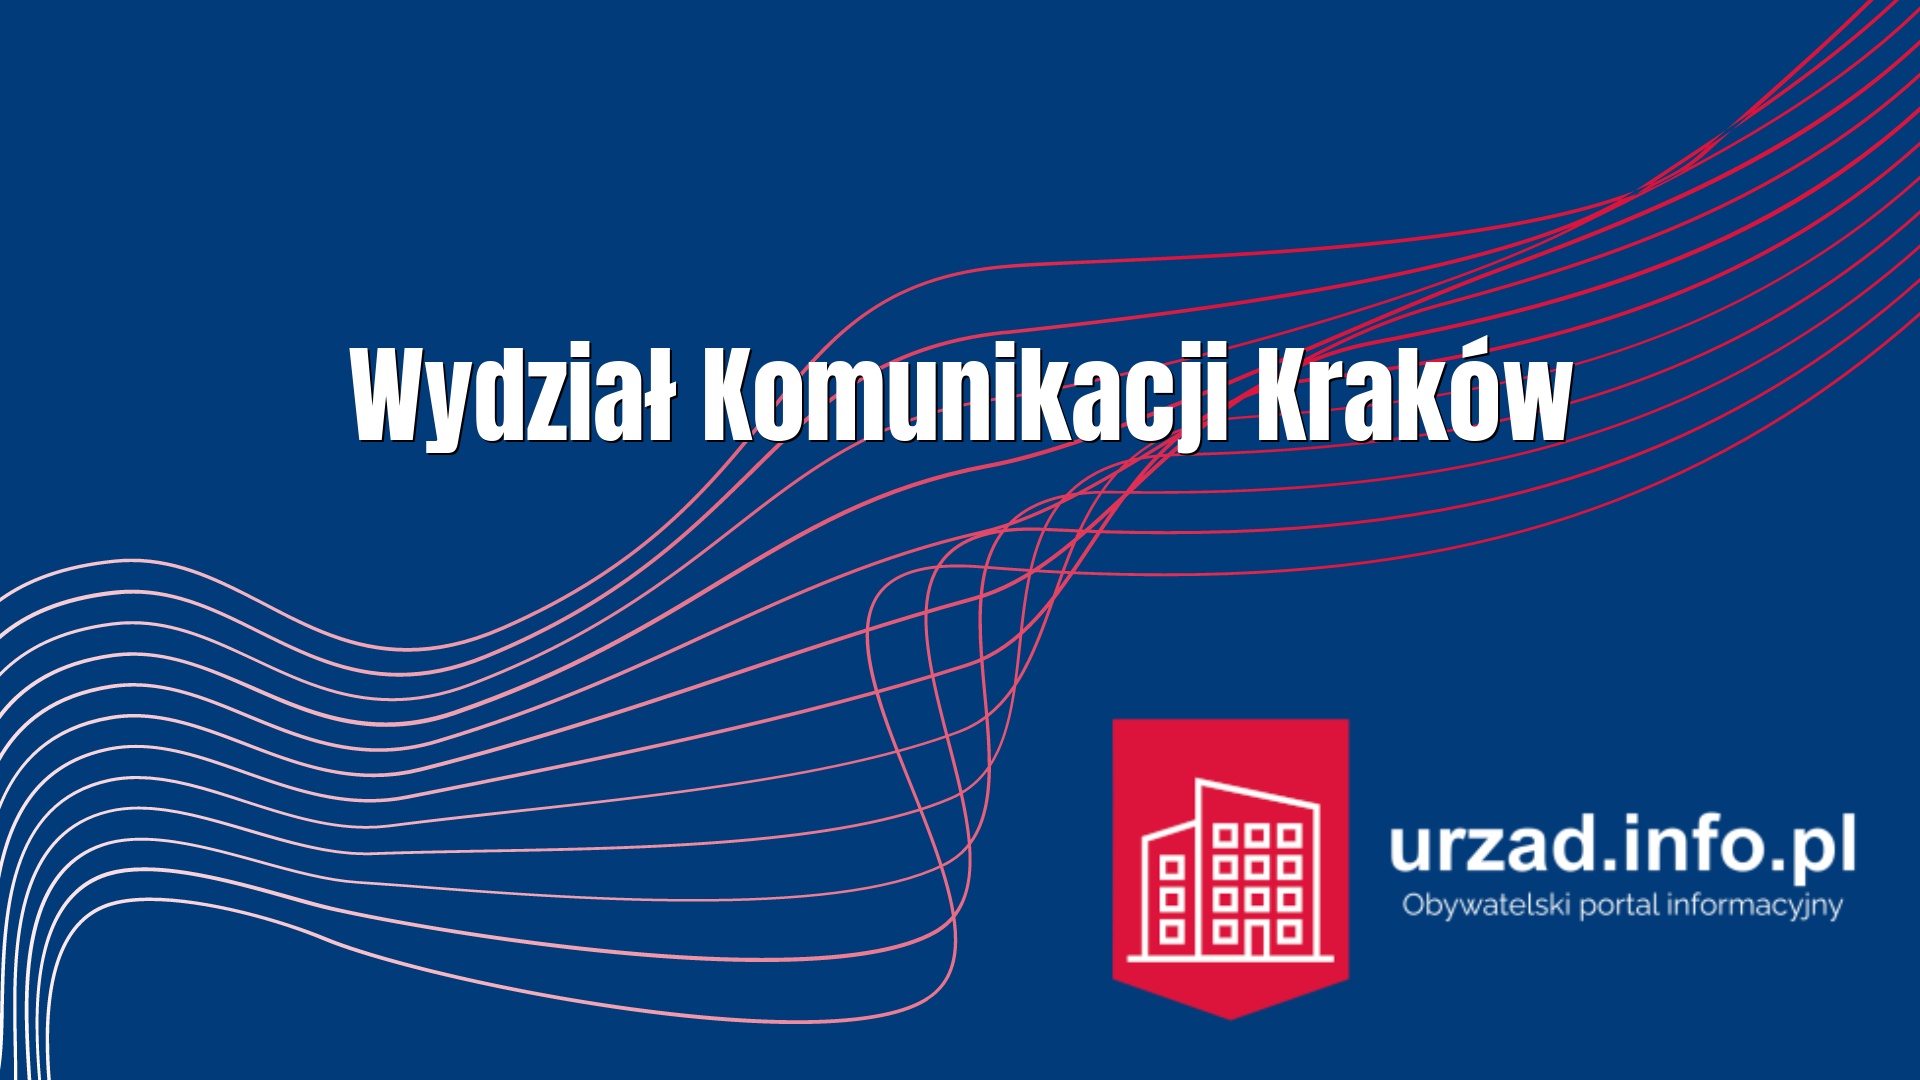 Wydział Komunikacji Kraków